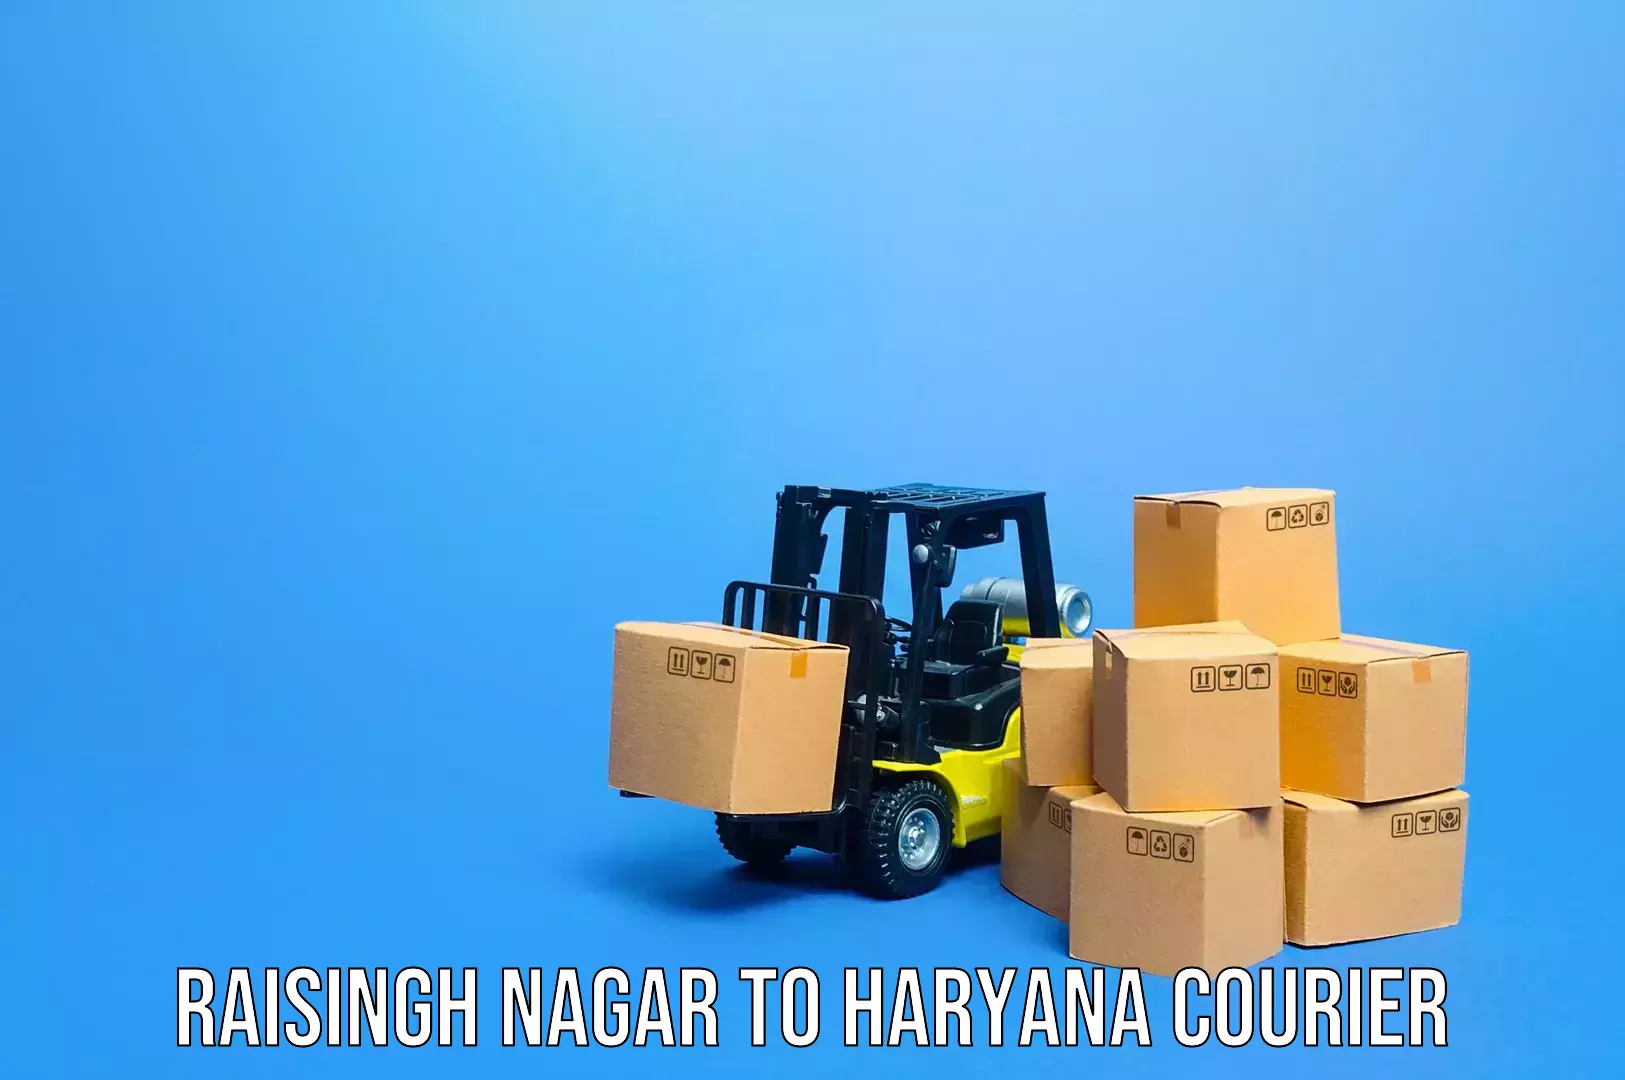 Affordable luggage shipping in Raisingh Nagar to Chaudhary Charan Singh Haryana Agricultural University Hisar